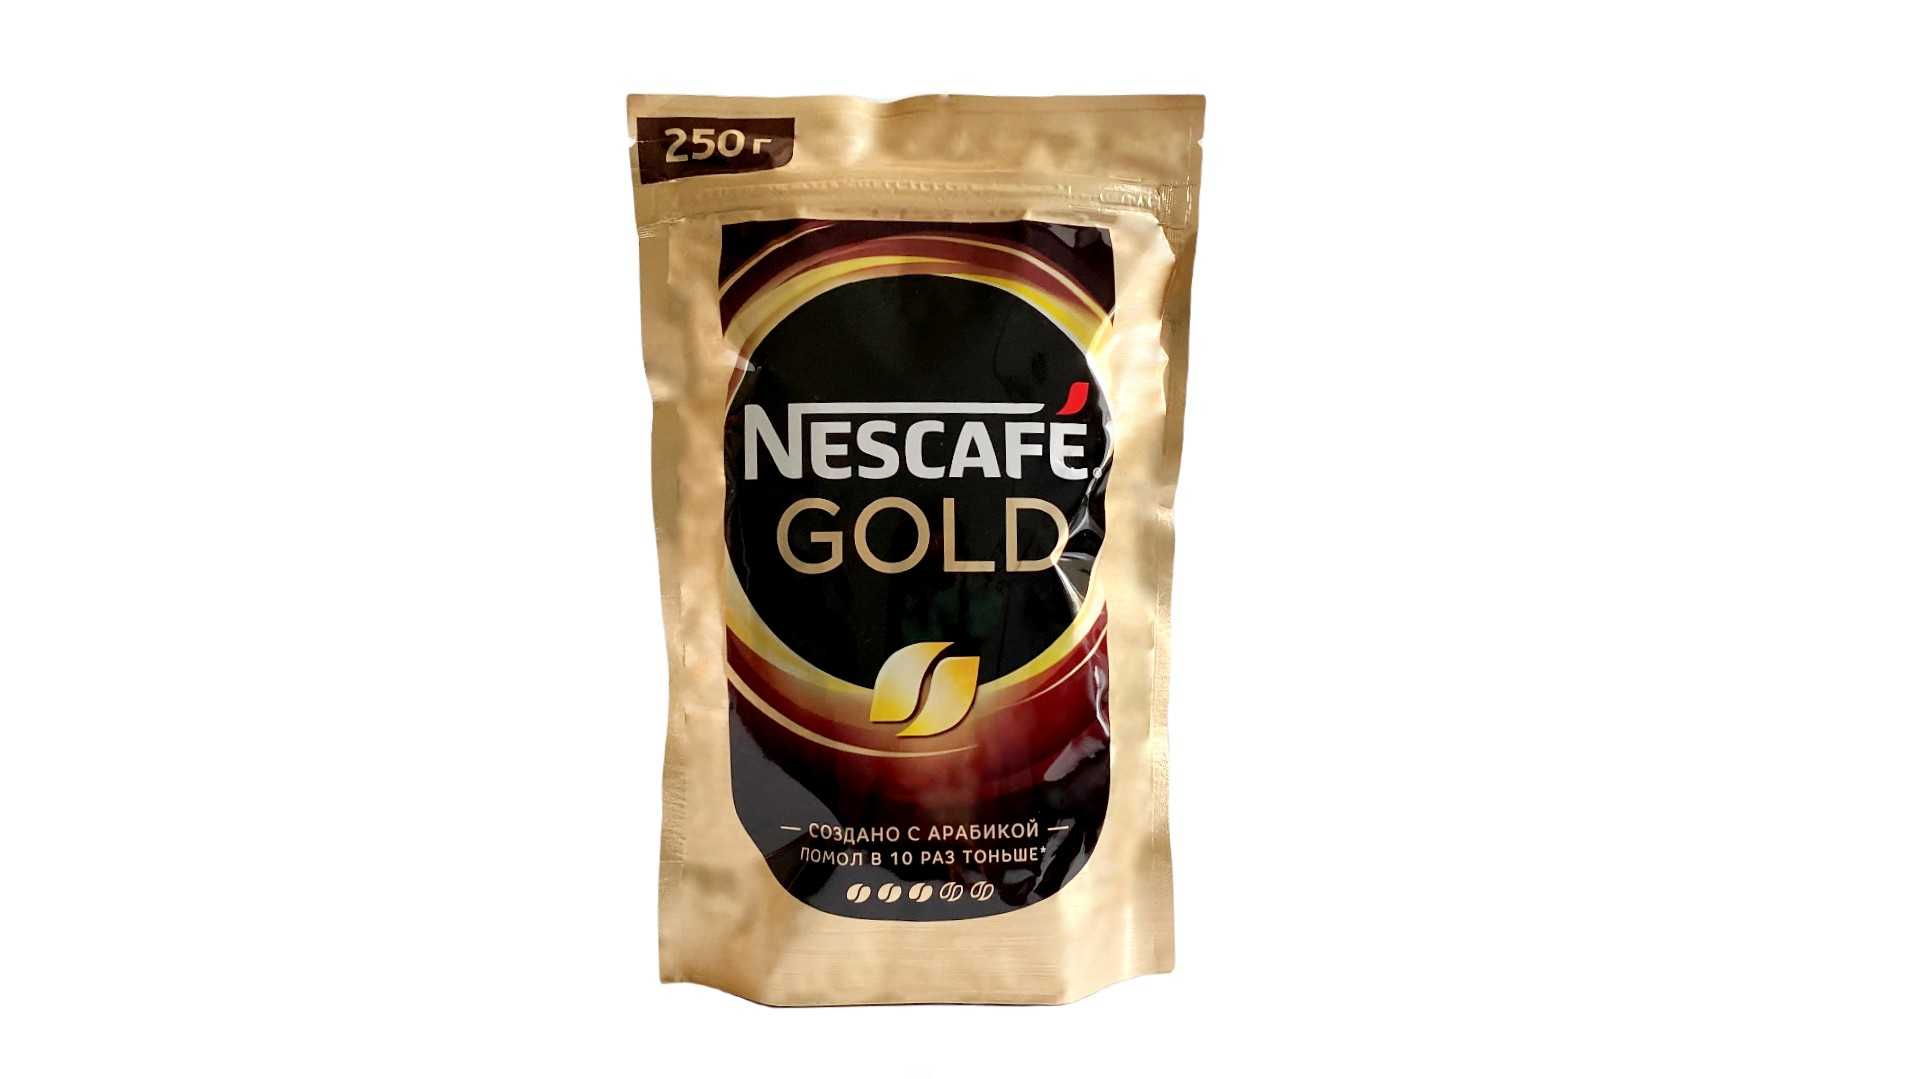 250 gold. Nescafe Gold 220 г. Нескафе Голд 250 гр. Nescafe Gold 150. Кофе Нескафе Голд 220 грамм.